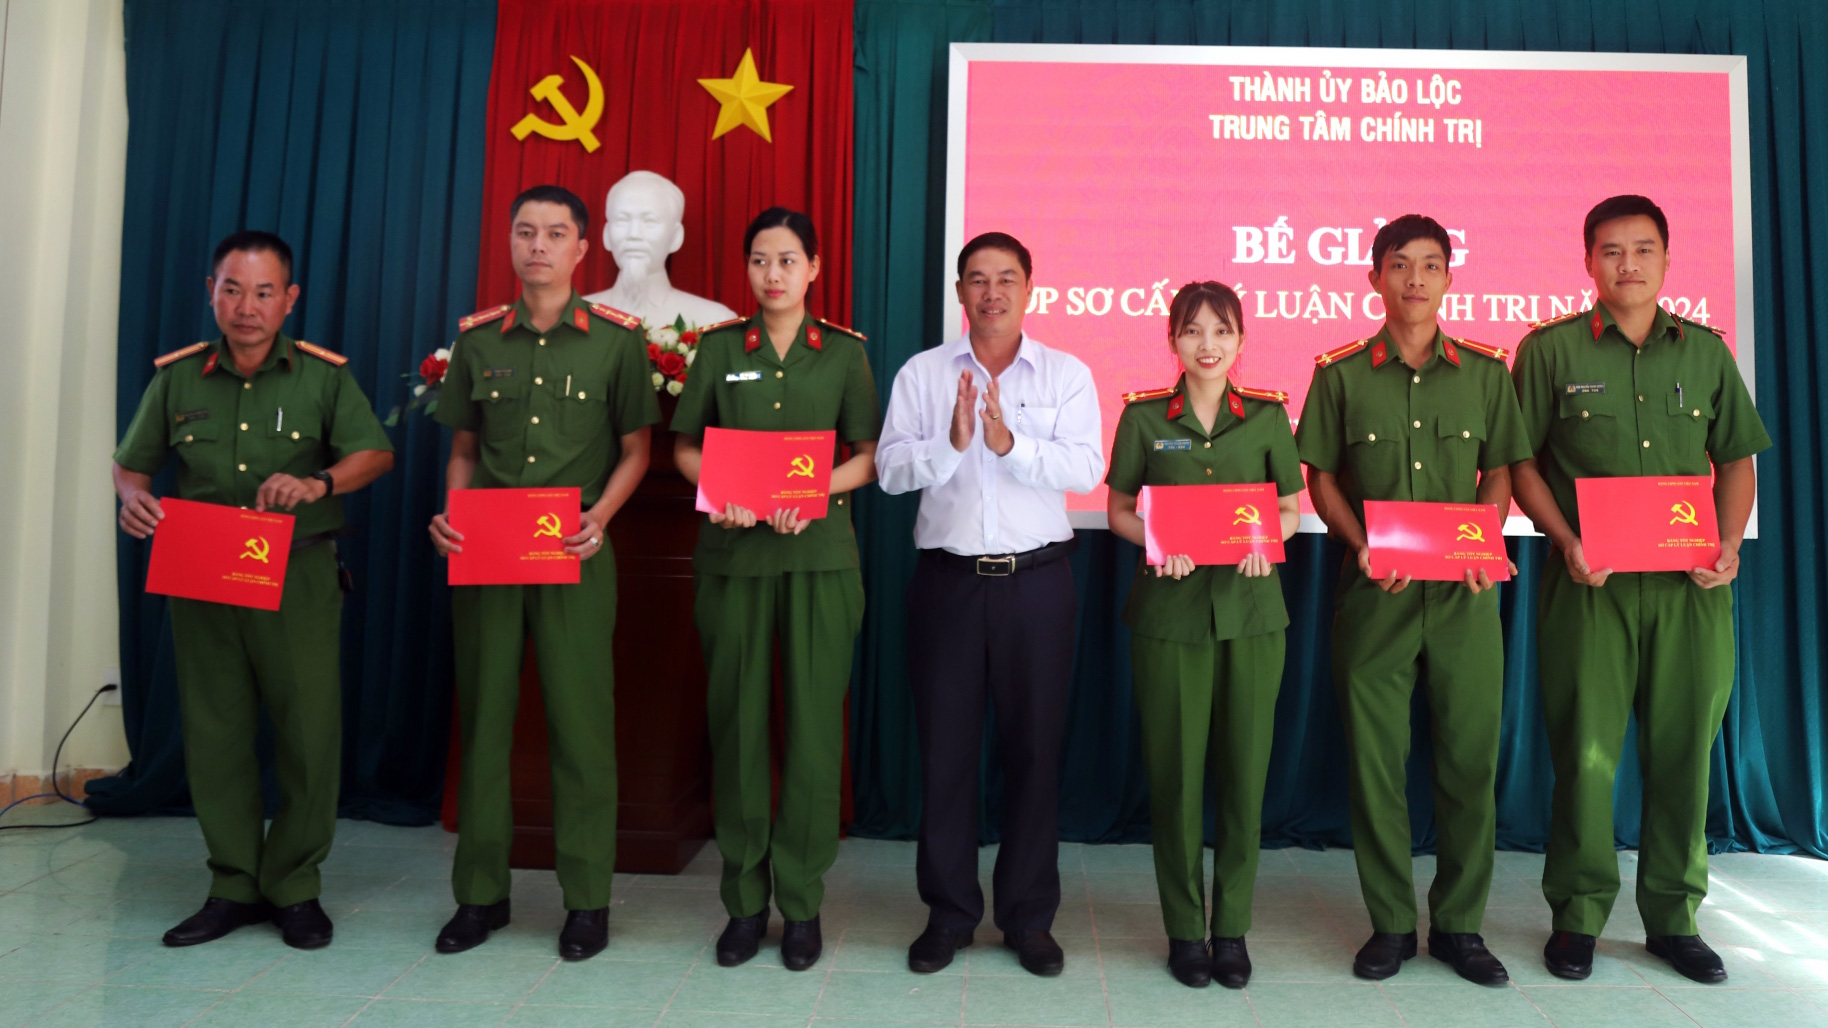 Đồng chí Nghiêm Xuân Đức - Phó Bí thư Thường trực Thành ủy, Chủ tịch HĐND TP Bảo Lộc trao bằng tốt nghiệp Sơ cấp lý luận chính trị cho các học viên